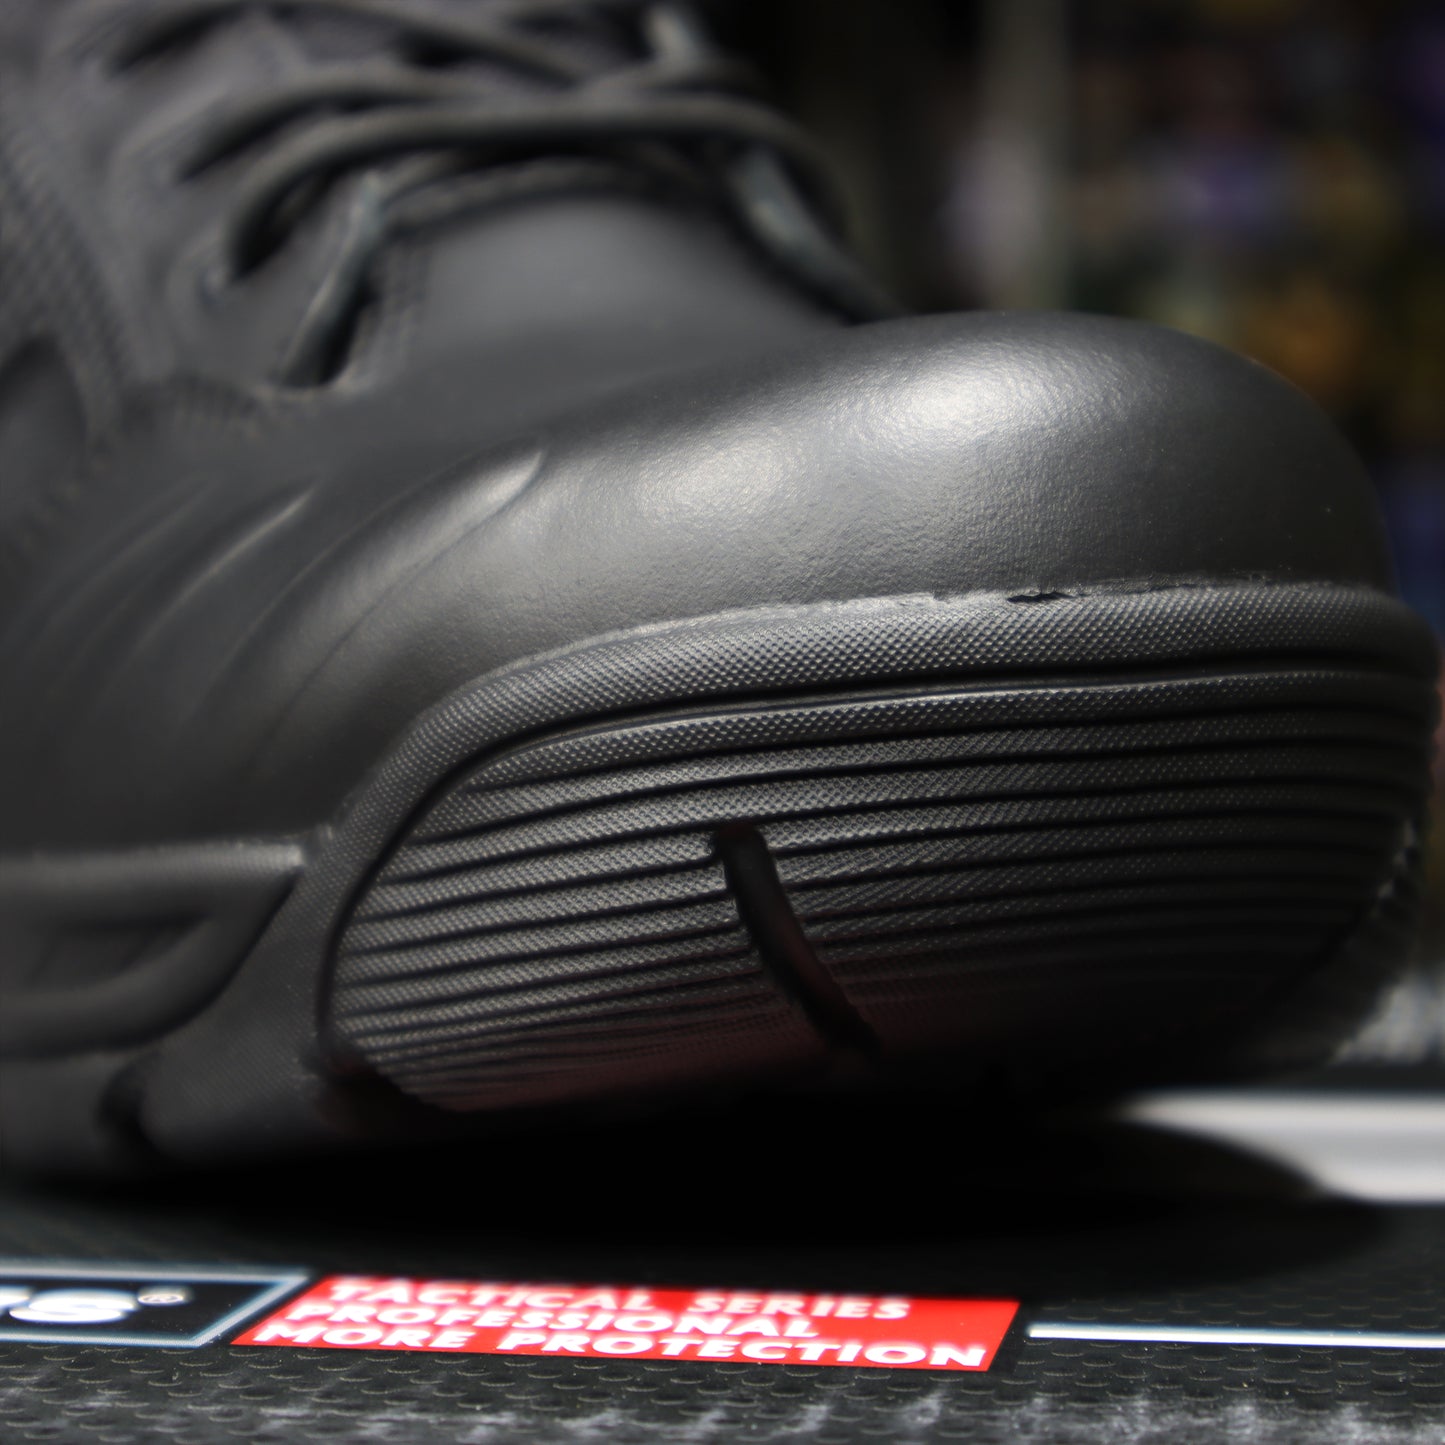 DrunRocks 5"防刺穿多用途戰術靴 (黑色)